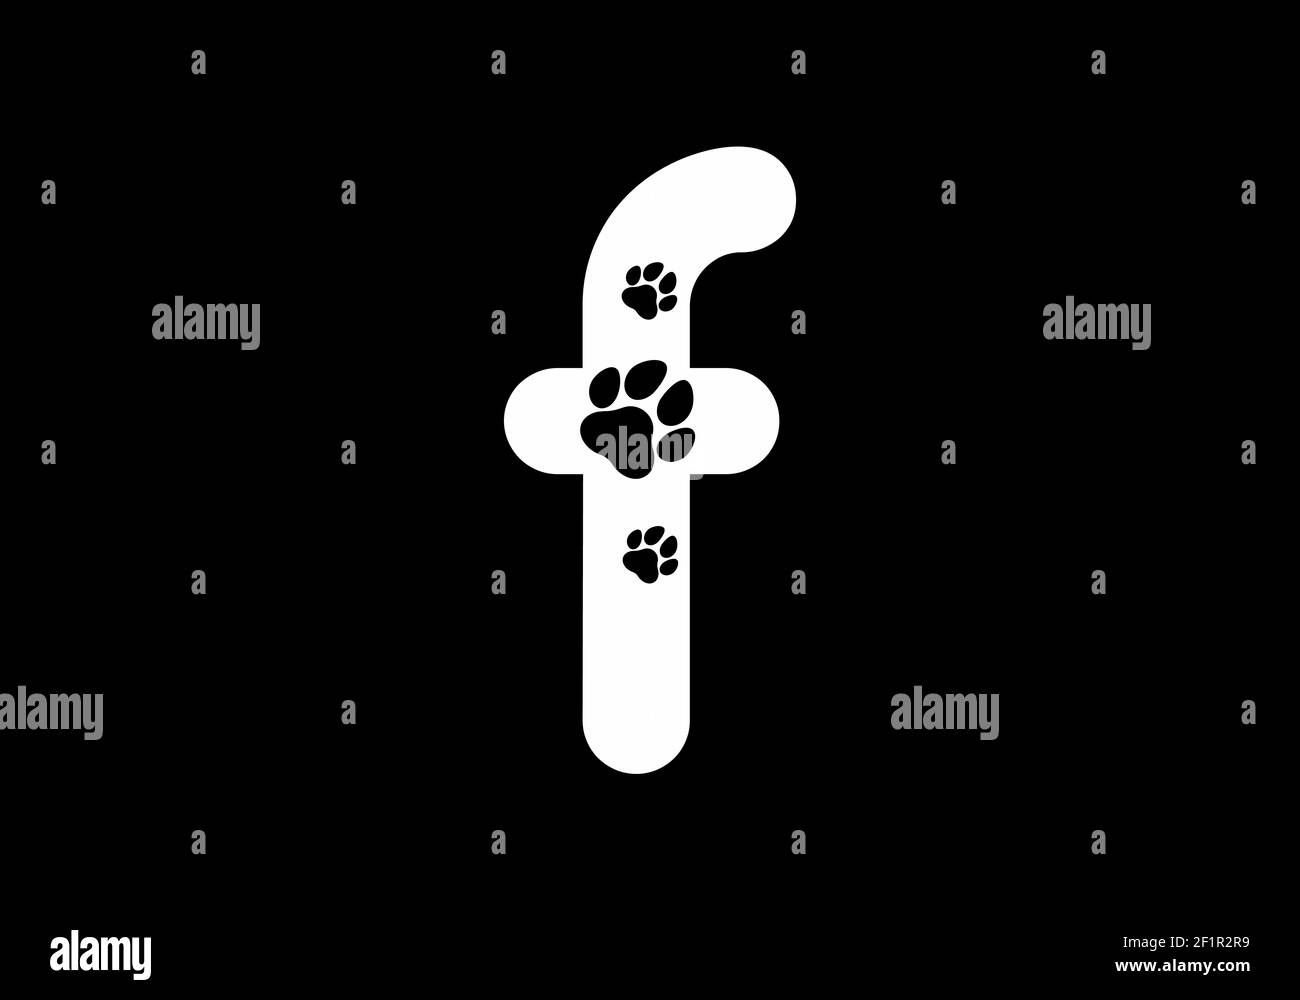 Lettre initiale F noire et blanche en forme de patte d'animal conception Illustration de Vecteur